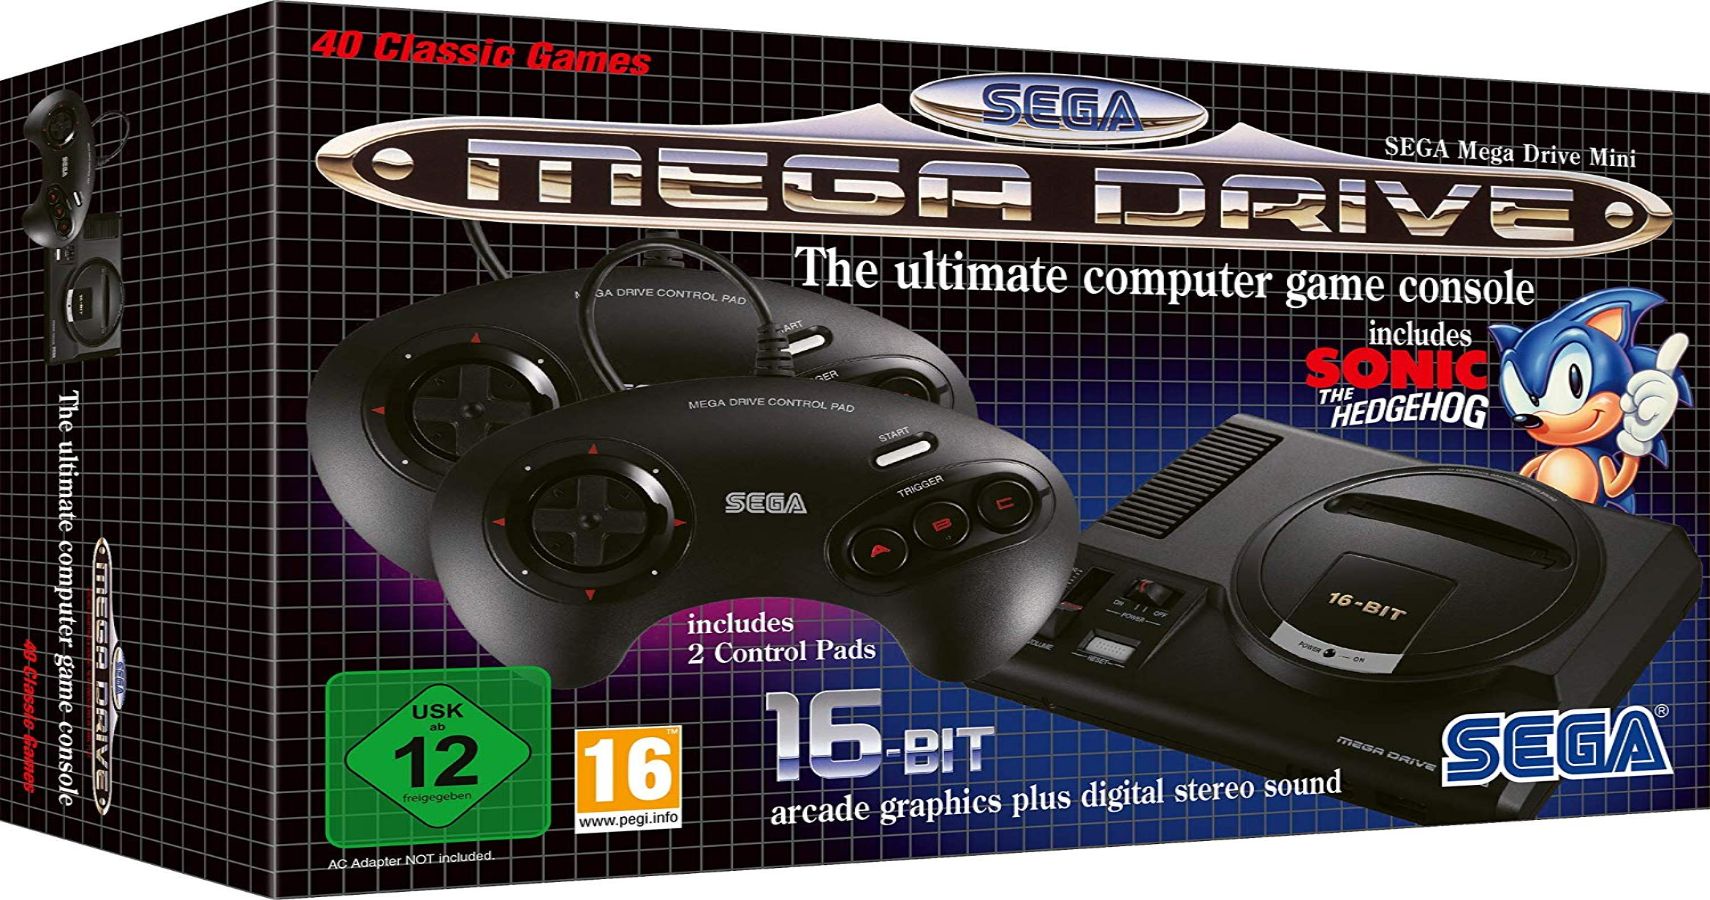 Игры сега на флешке. Sega Mega Drive 2 мини. Микро игровая приставка Sega Genesis. Приставка Sega Genesis ATOAMES. Sega Mega Drive 4 2 c переключателем регионов.